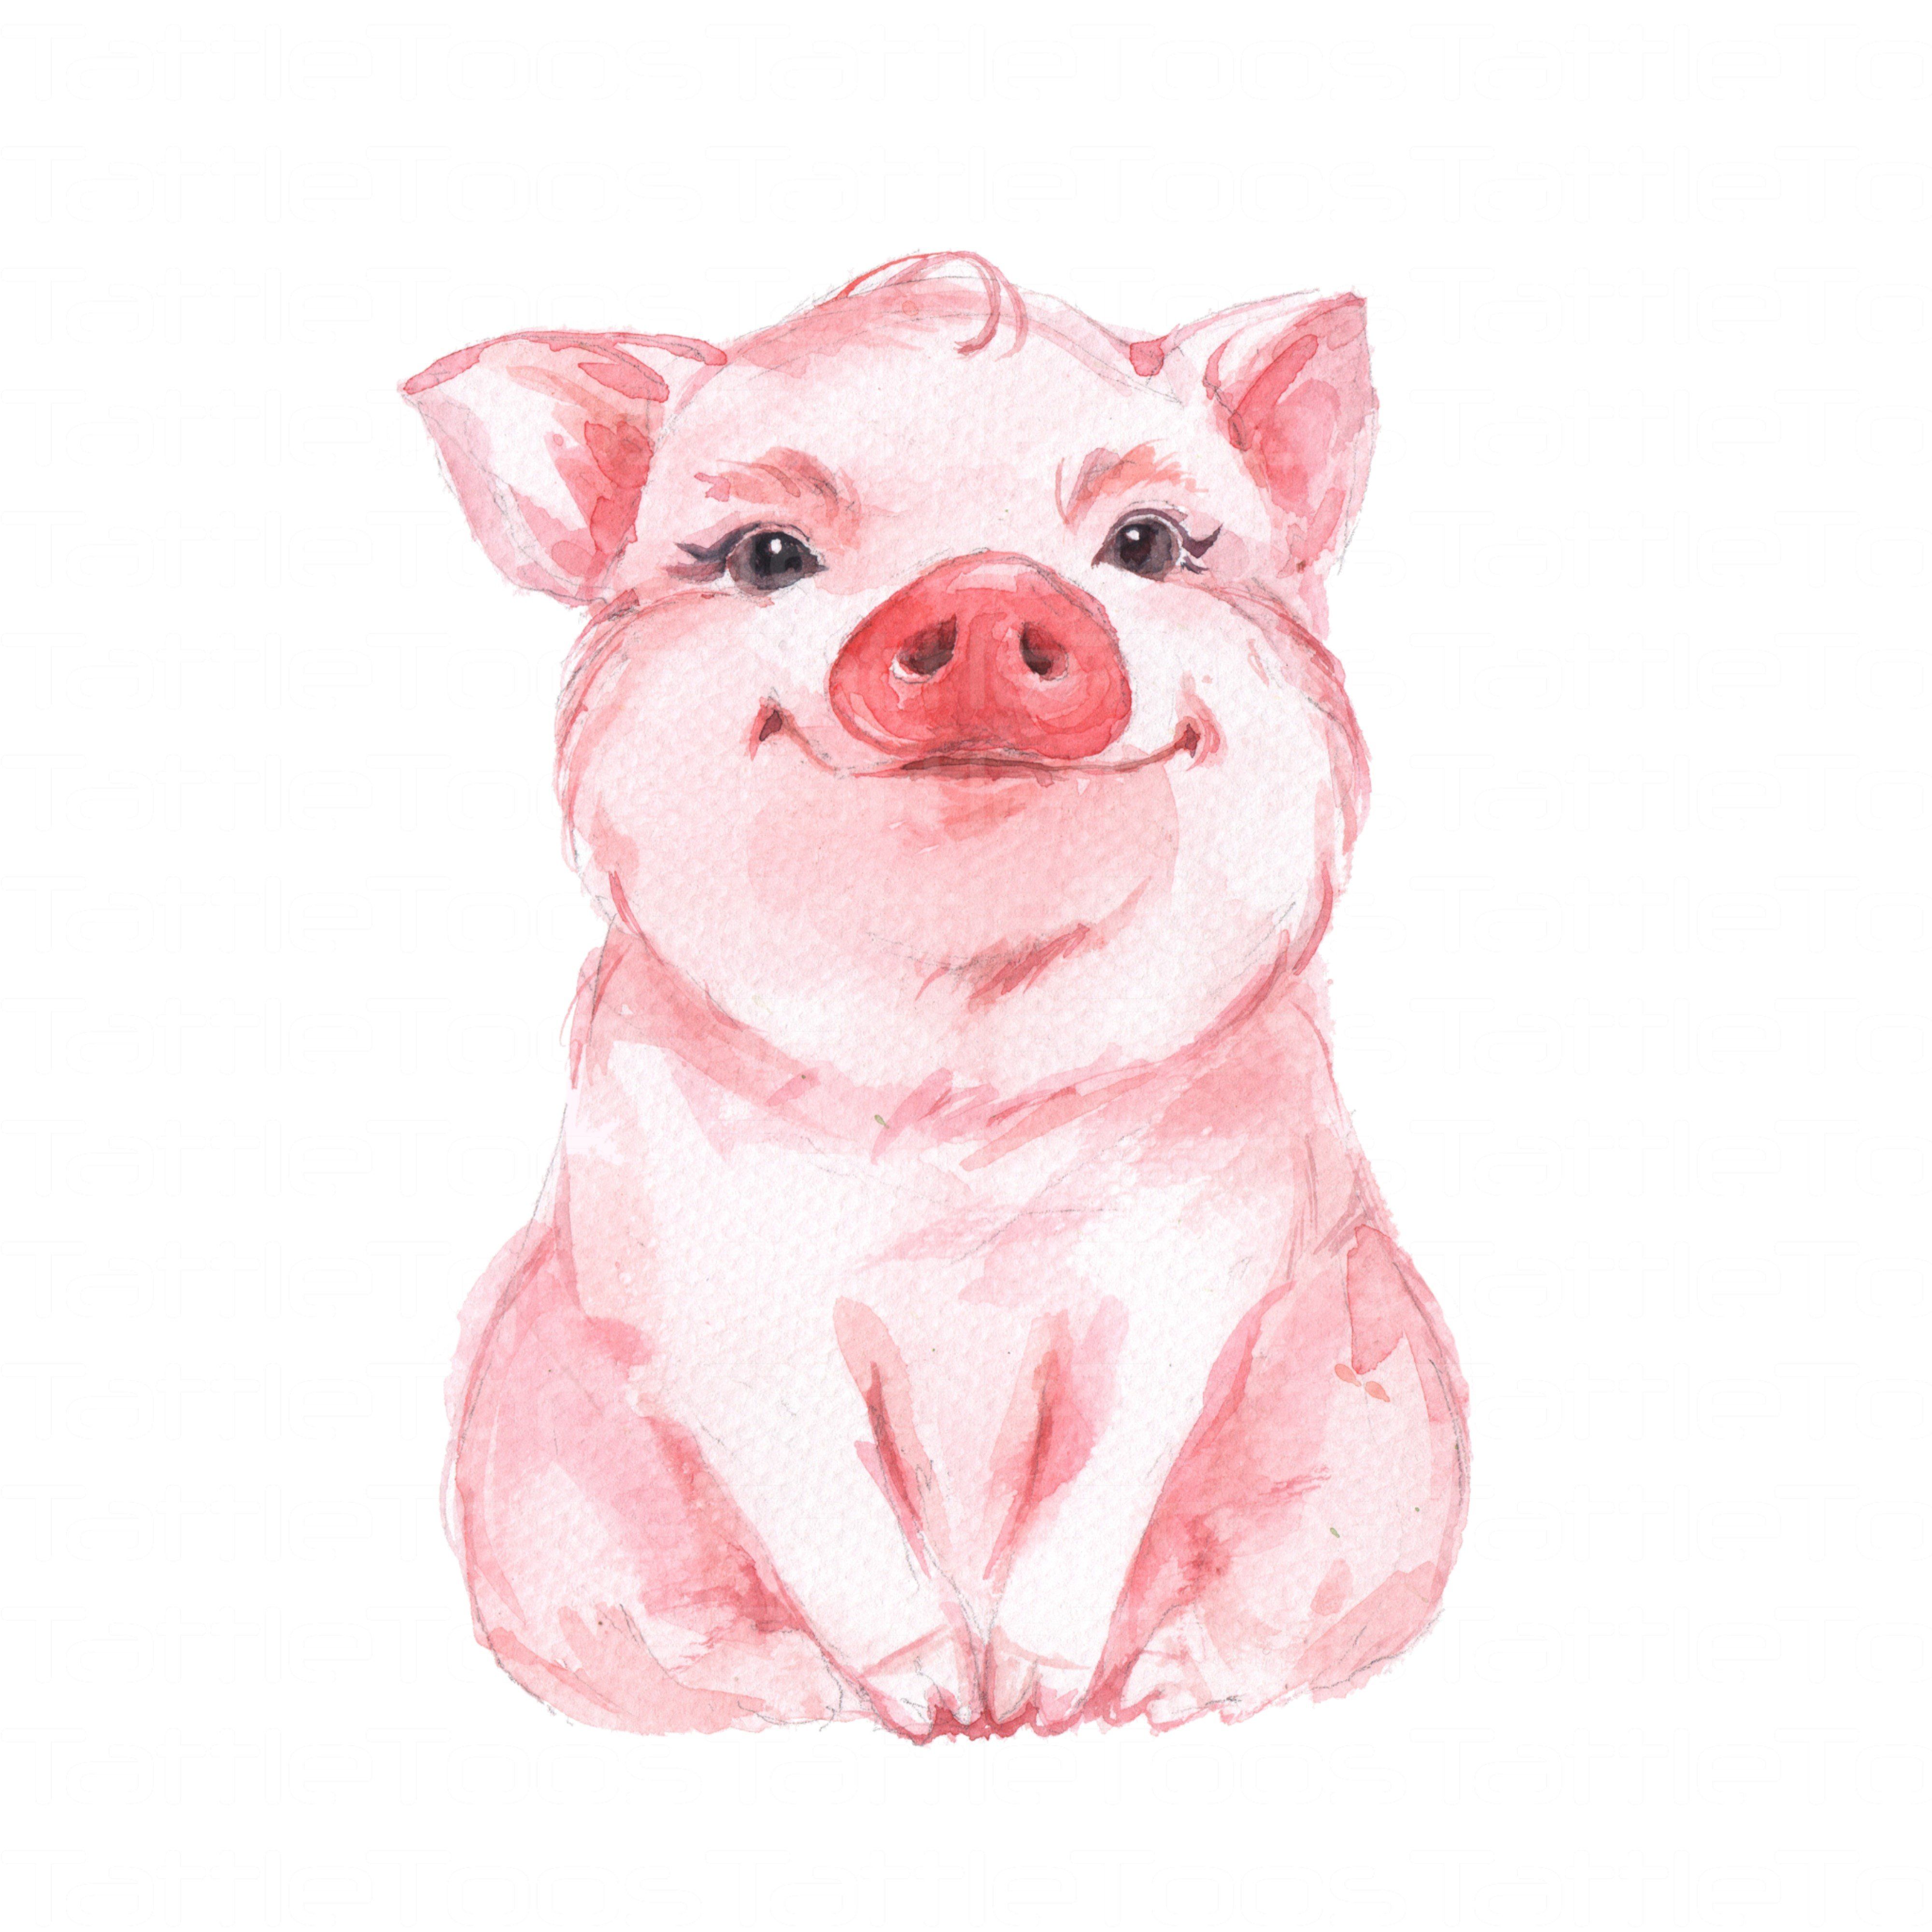 Cute Pig Drawing Sketch